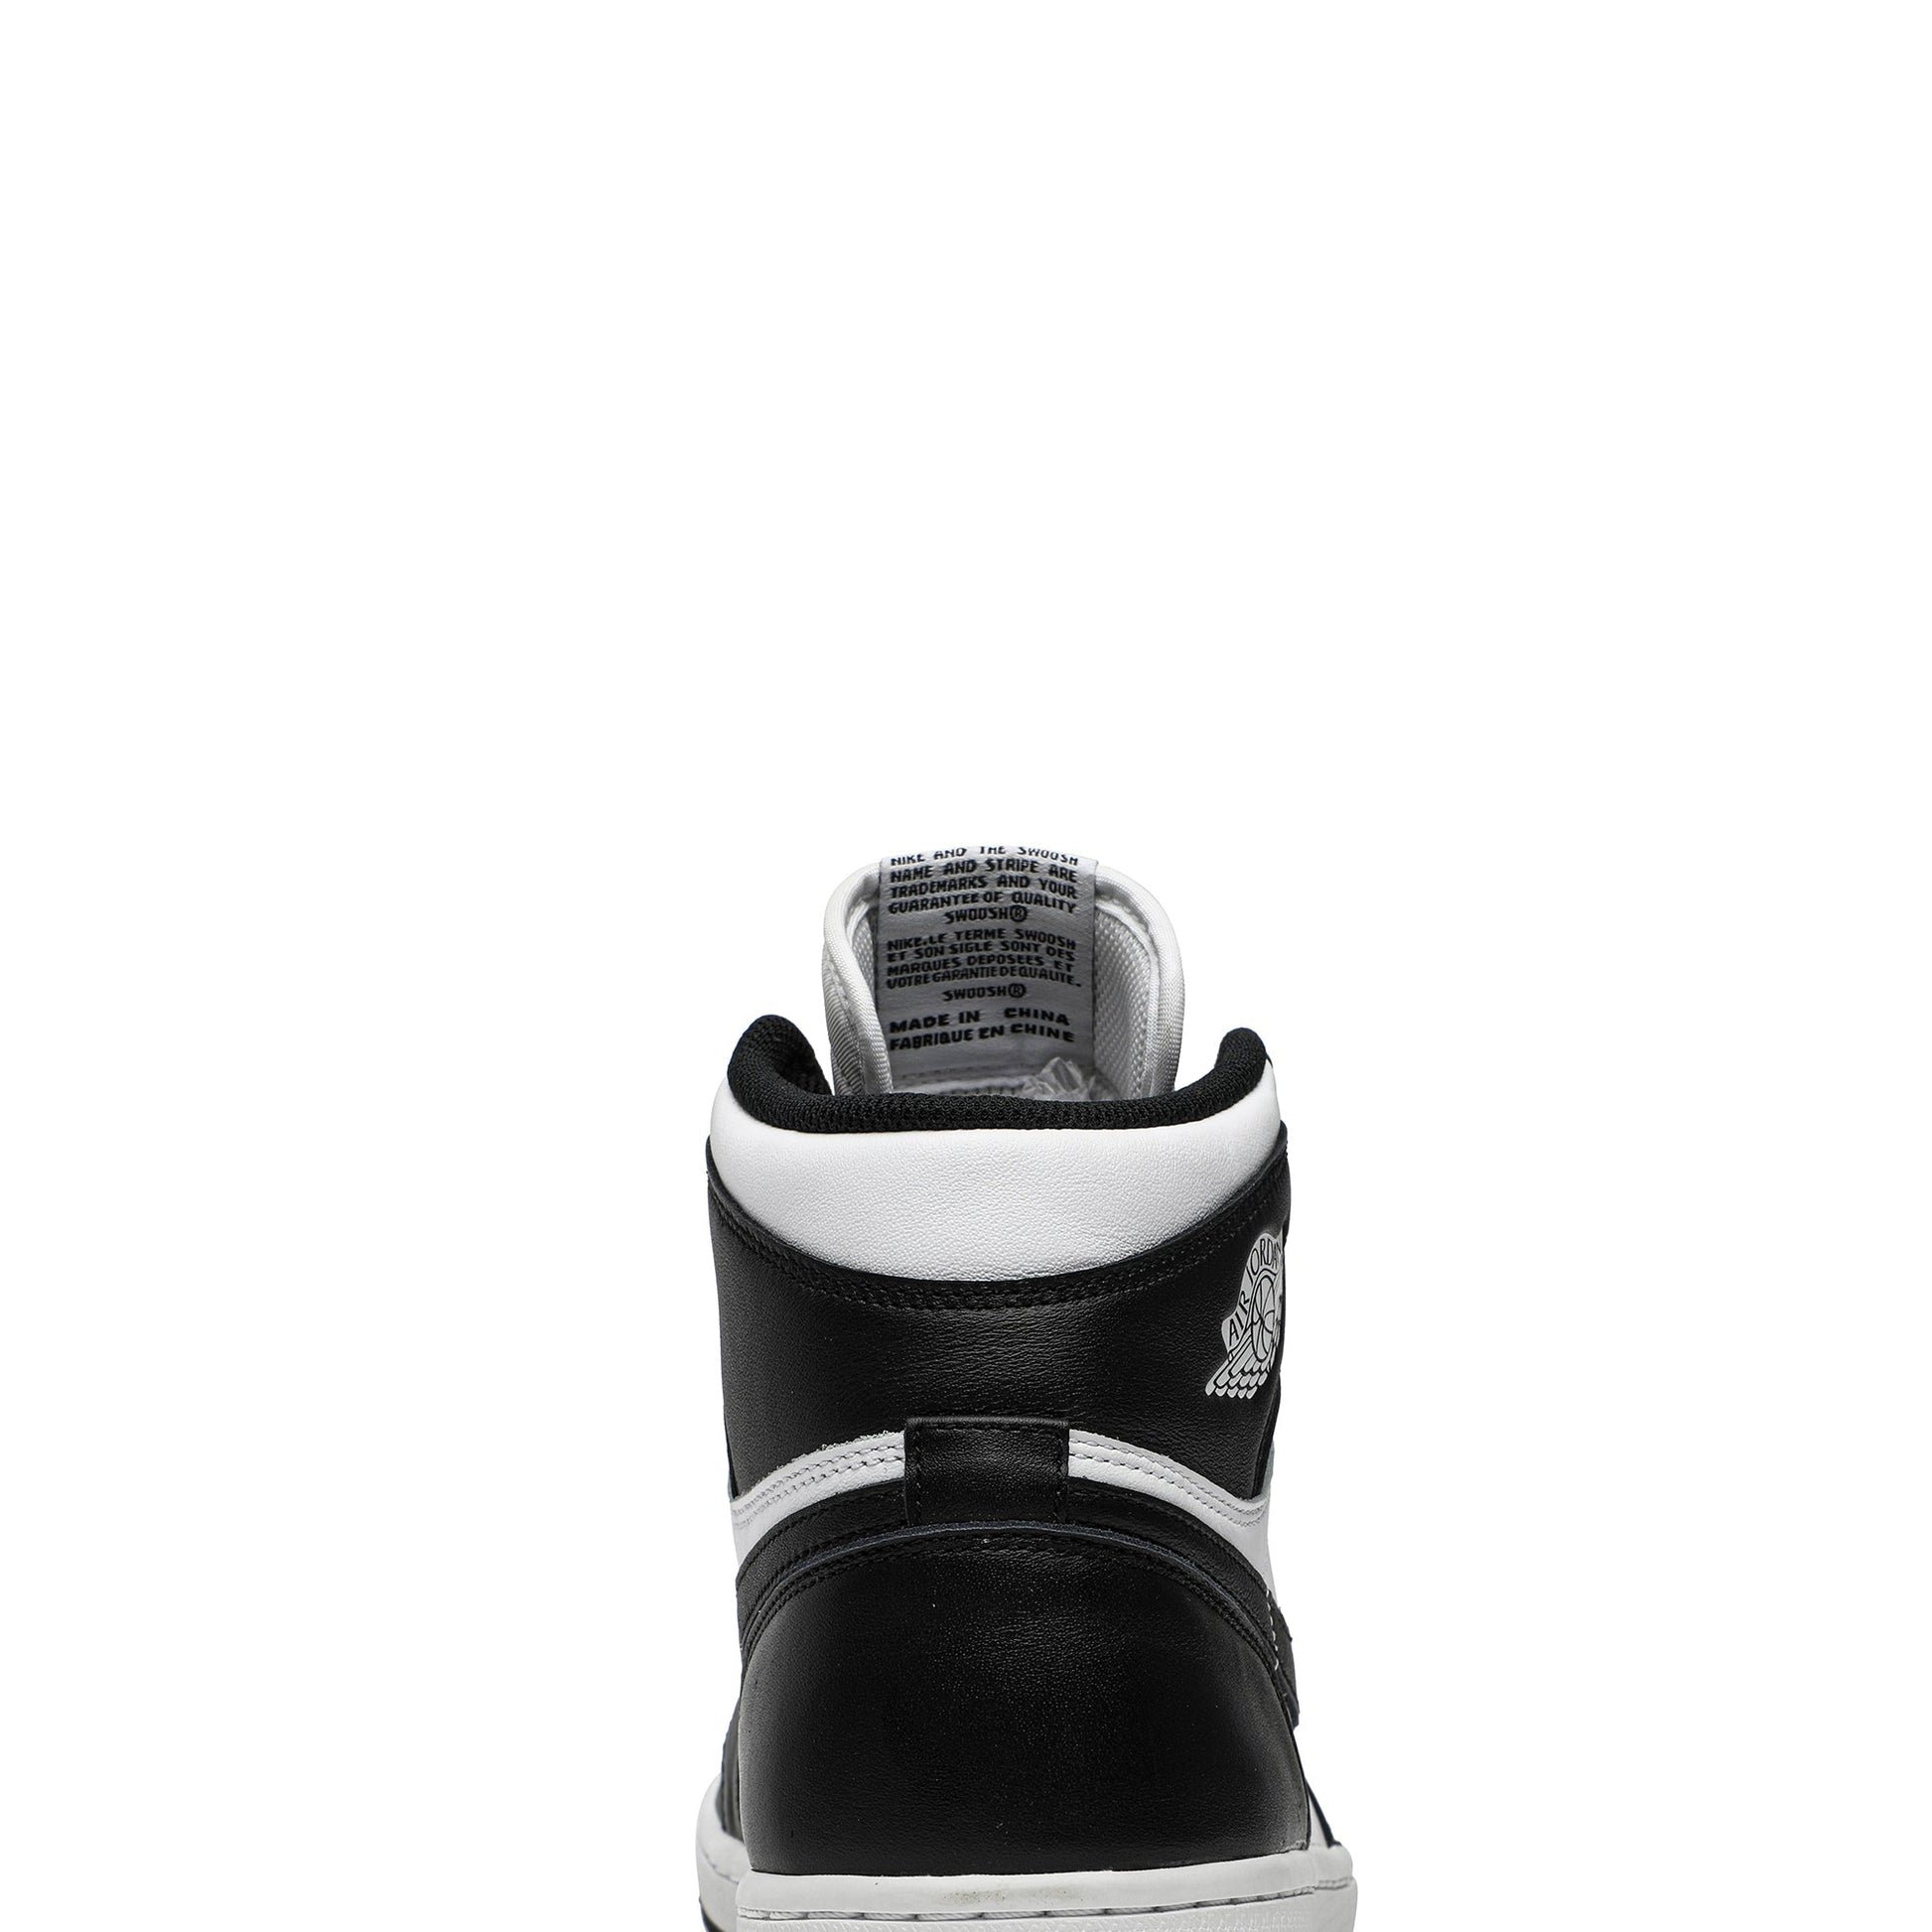 Air Jordan 1 Retro High OG 'Black/White' 555088-010